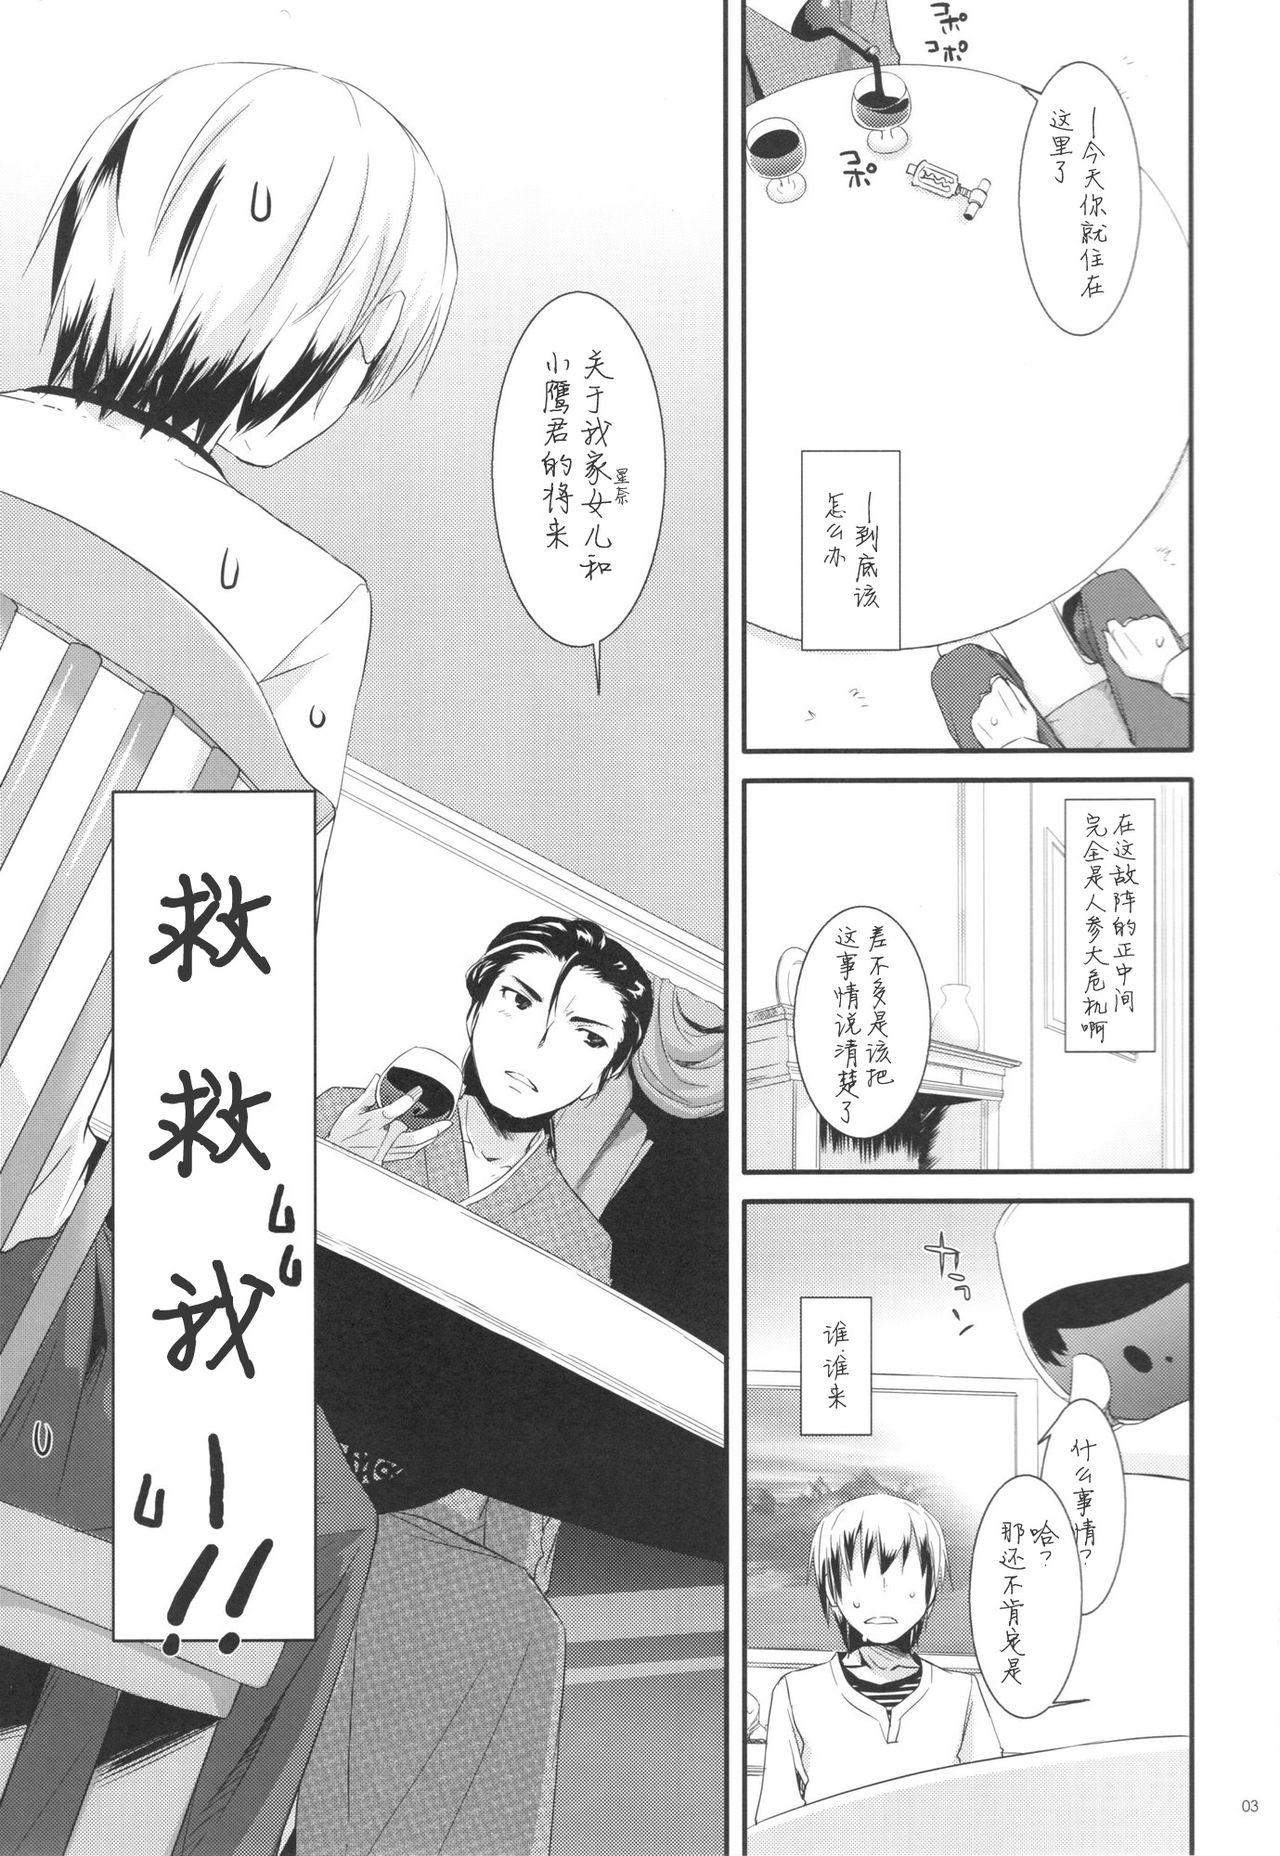 Cdzinha D.L. action 62 - Boku wa tomodachi ga sukunai Cougar - Page 4